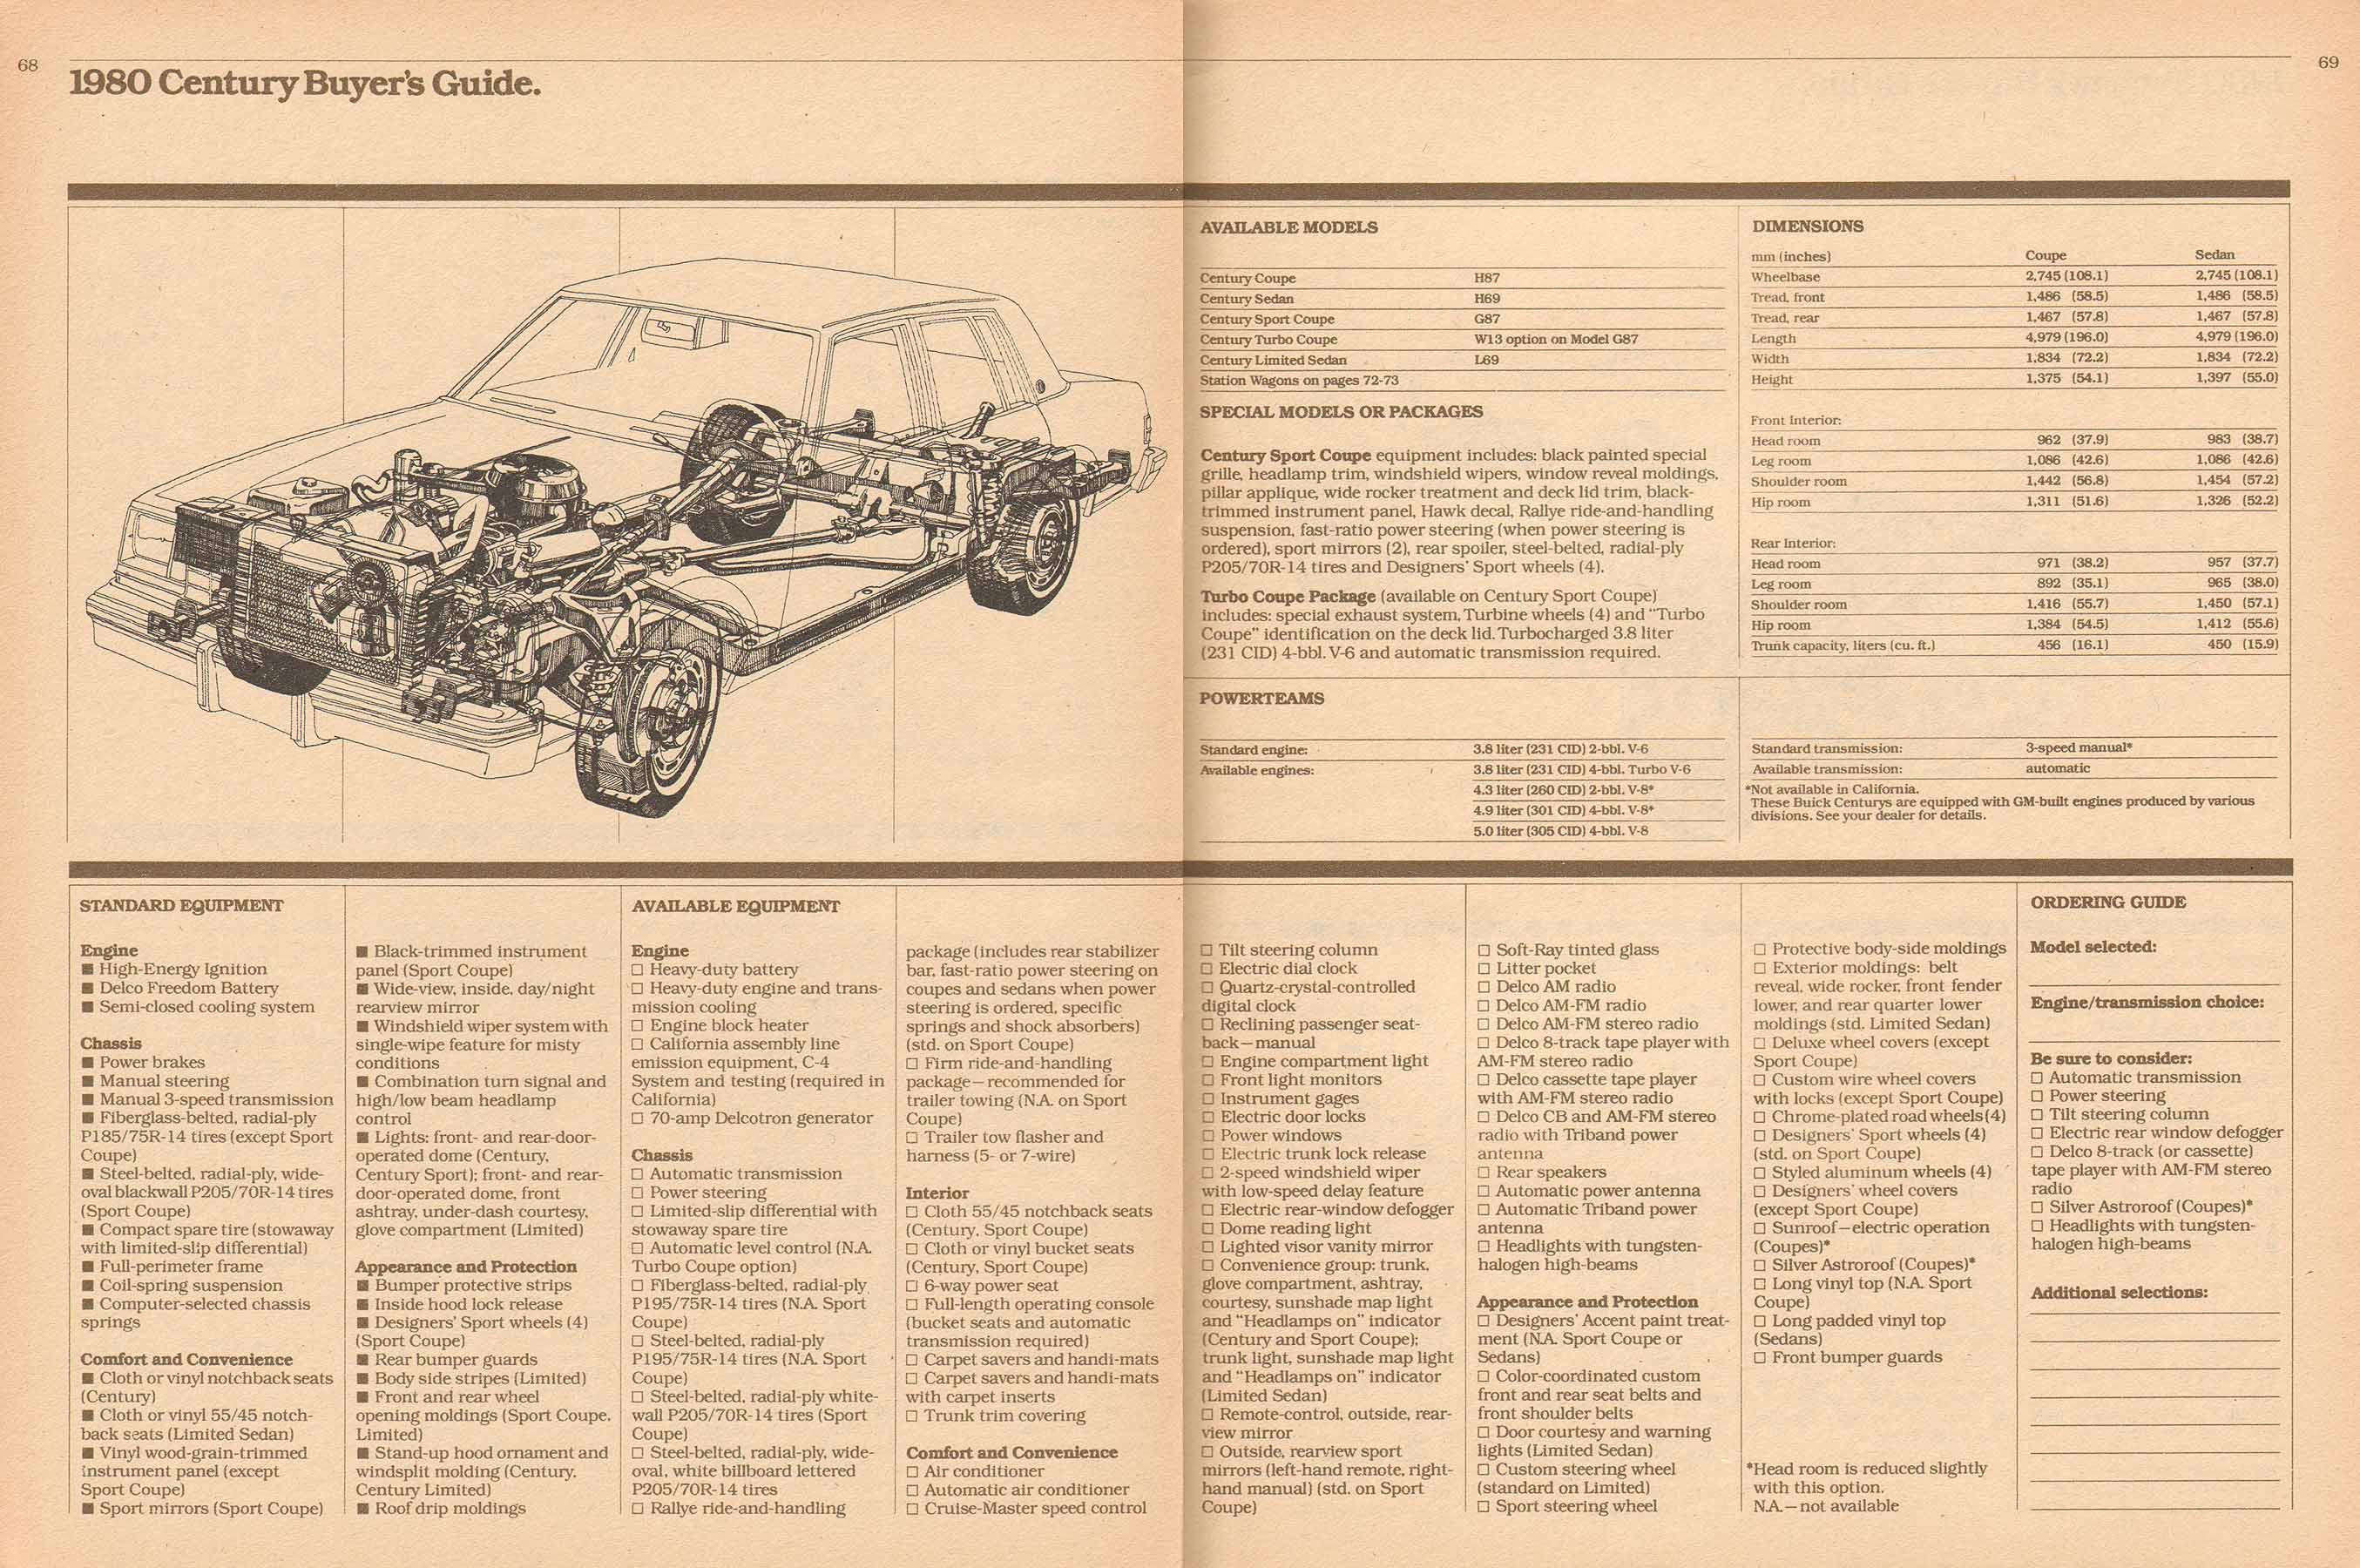 1980 Buick Full Line Prestige-68-69